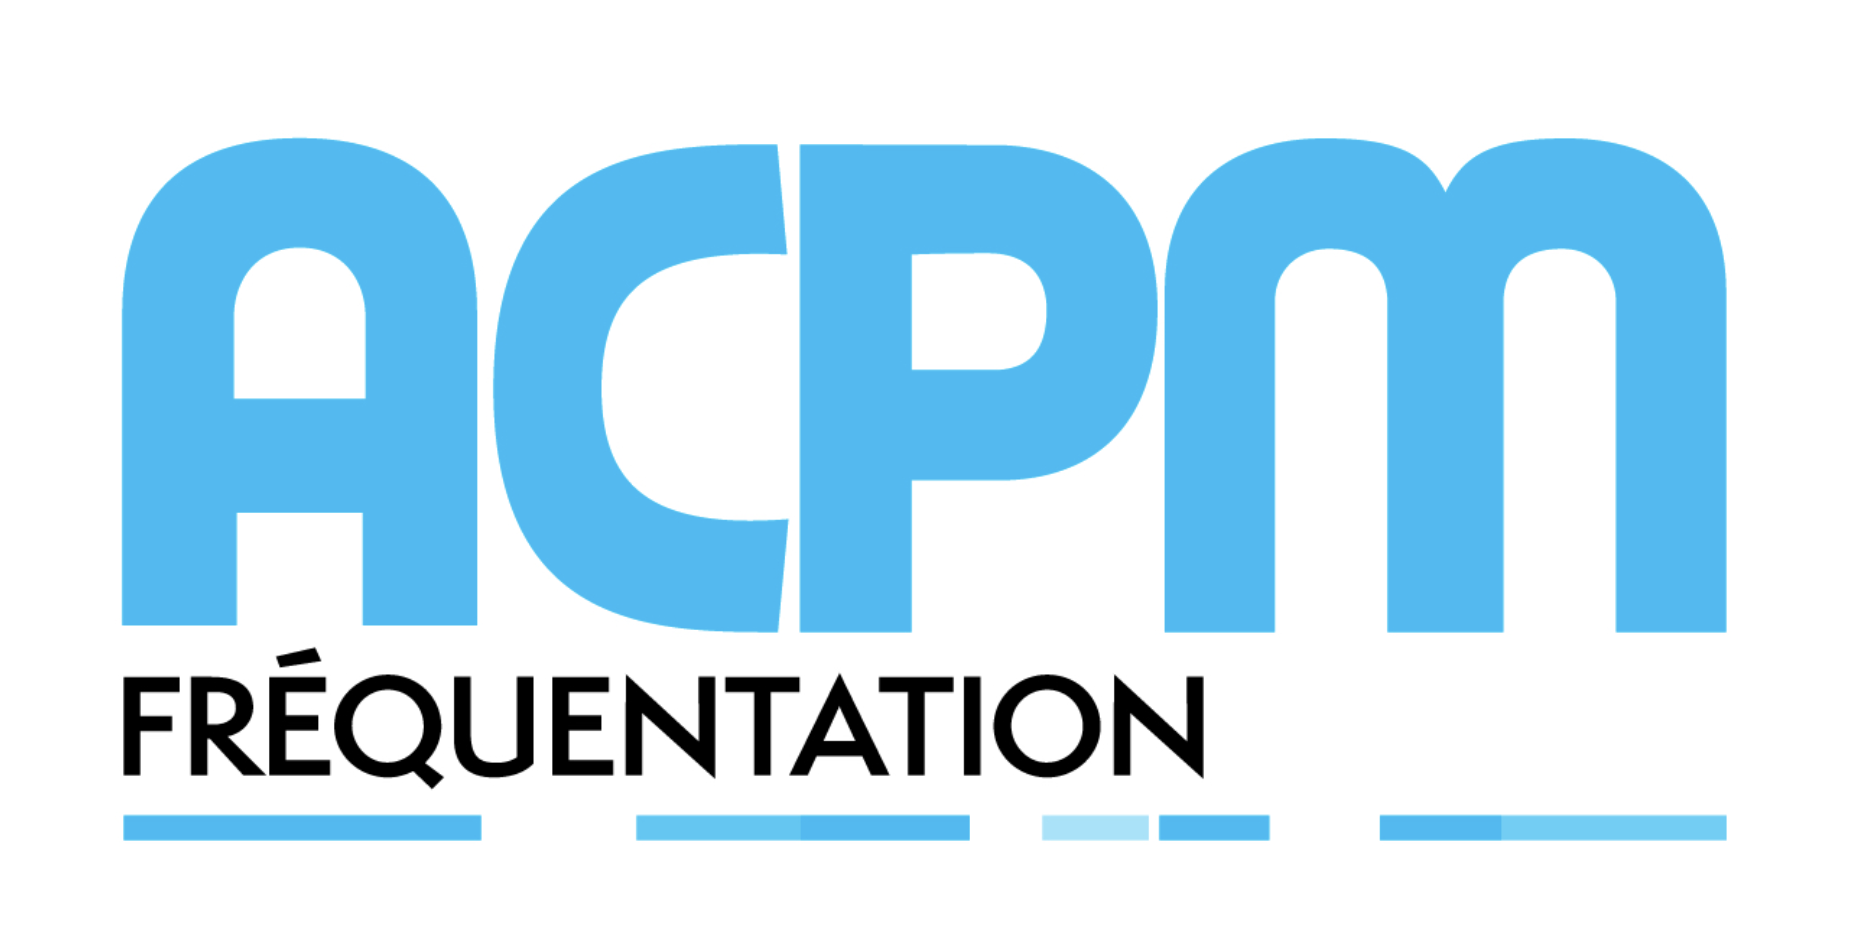 ACPM : les radios les plus écoutées sur le web